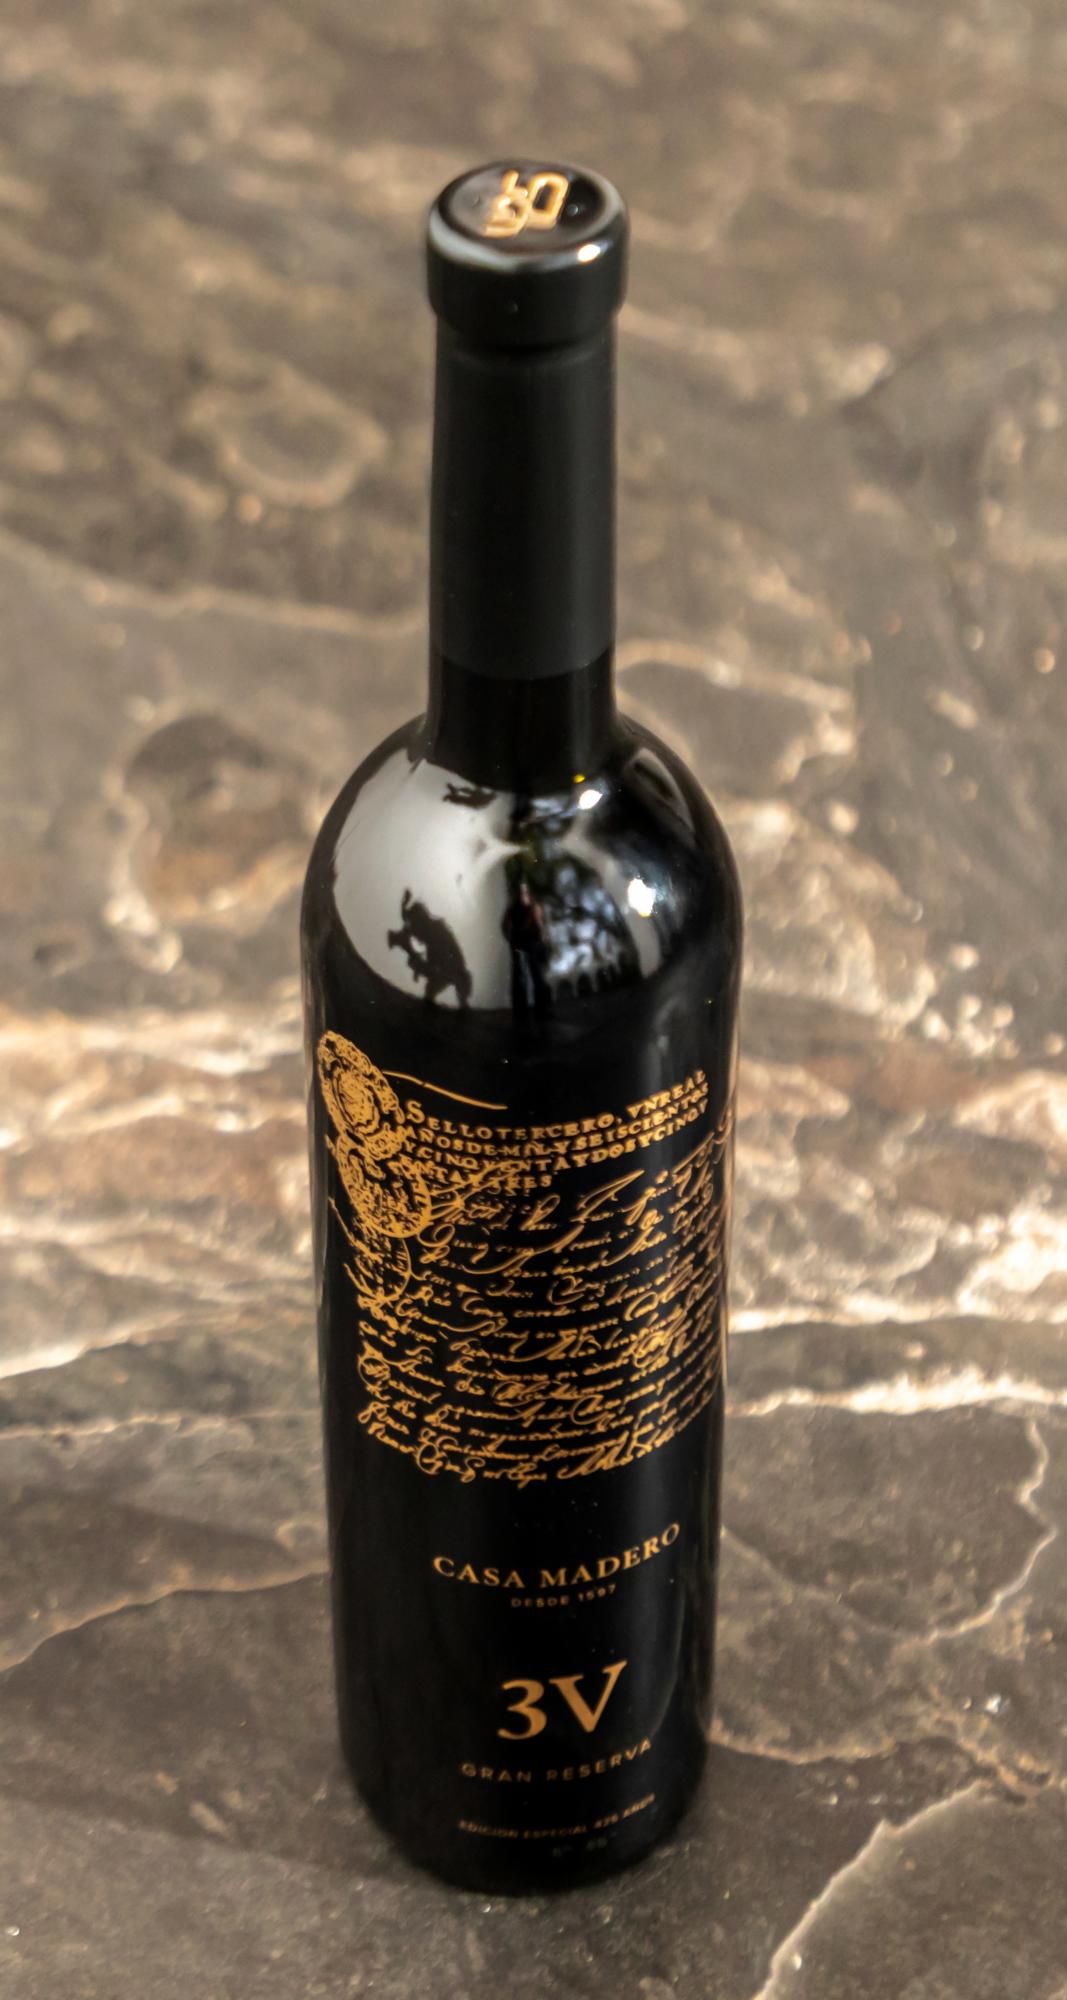 $!Conquistan paladares por su 425 aniversario: Deslumbra Casa Madero con lanzamiento de su vino Gran Reserva 3V